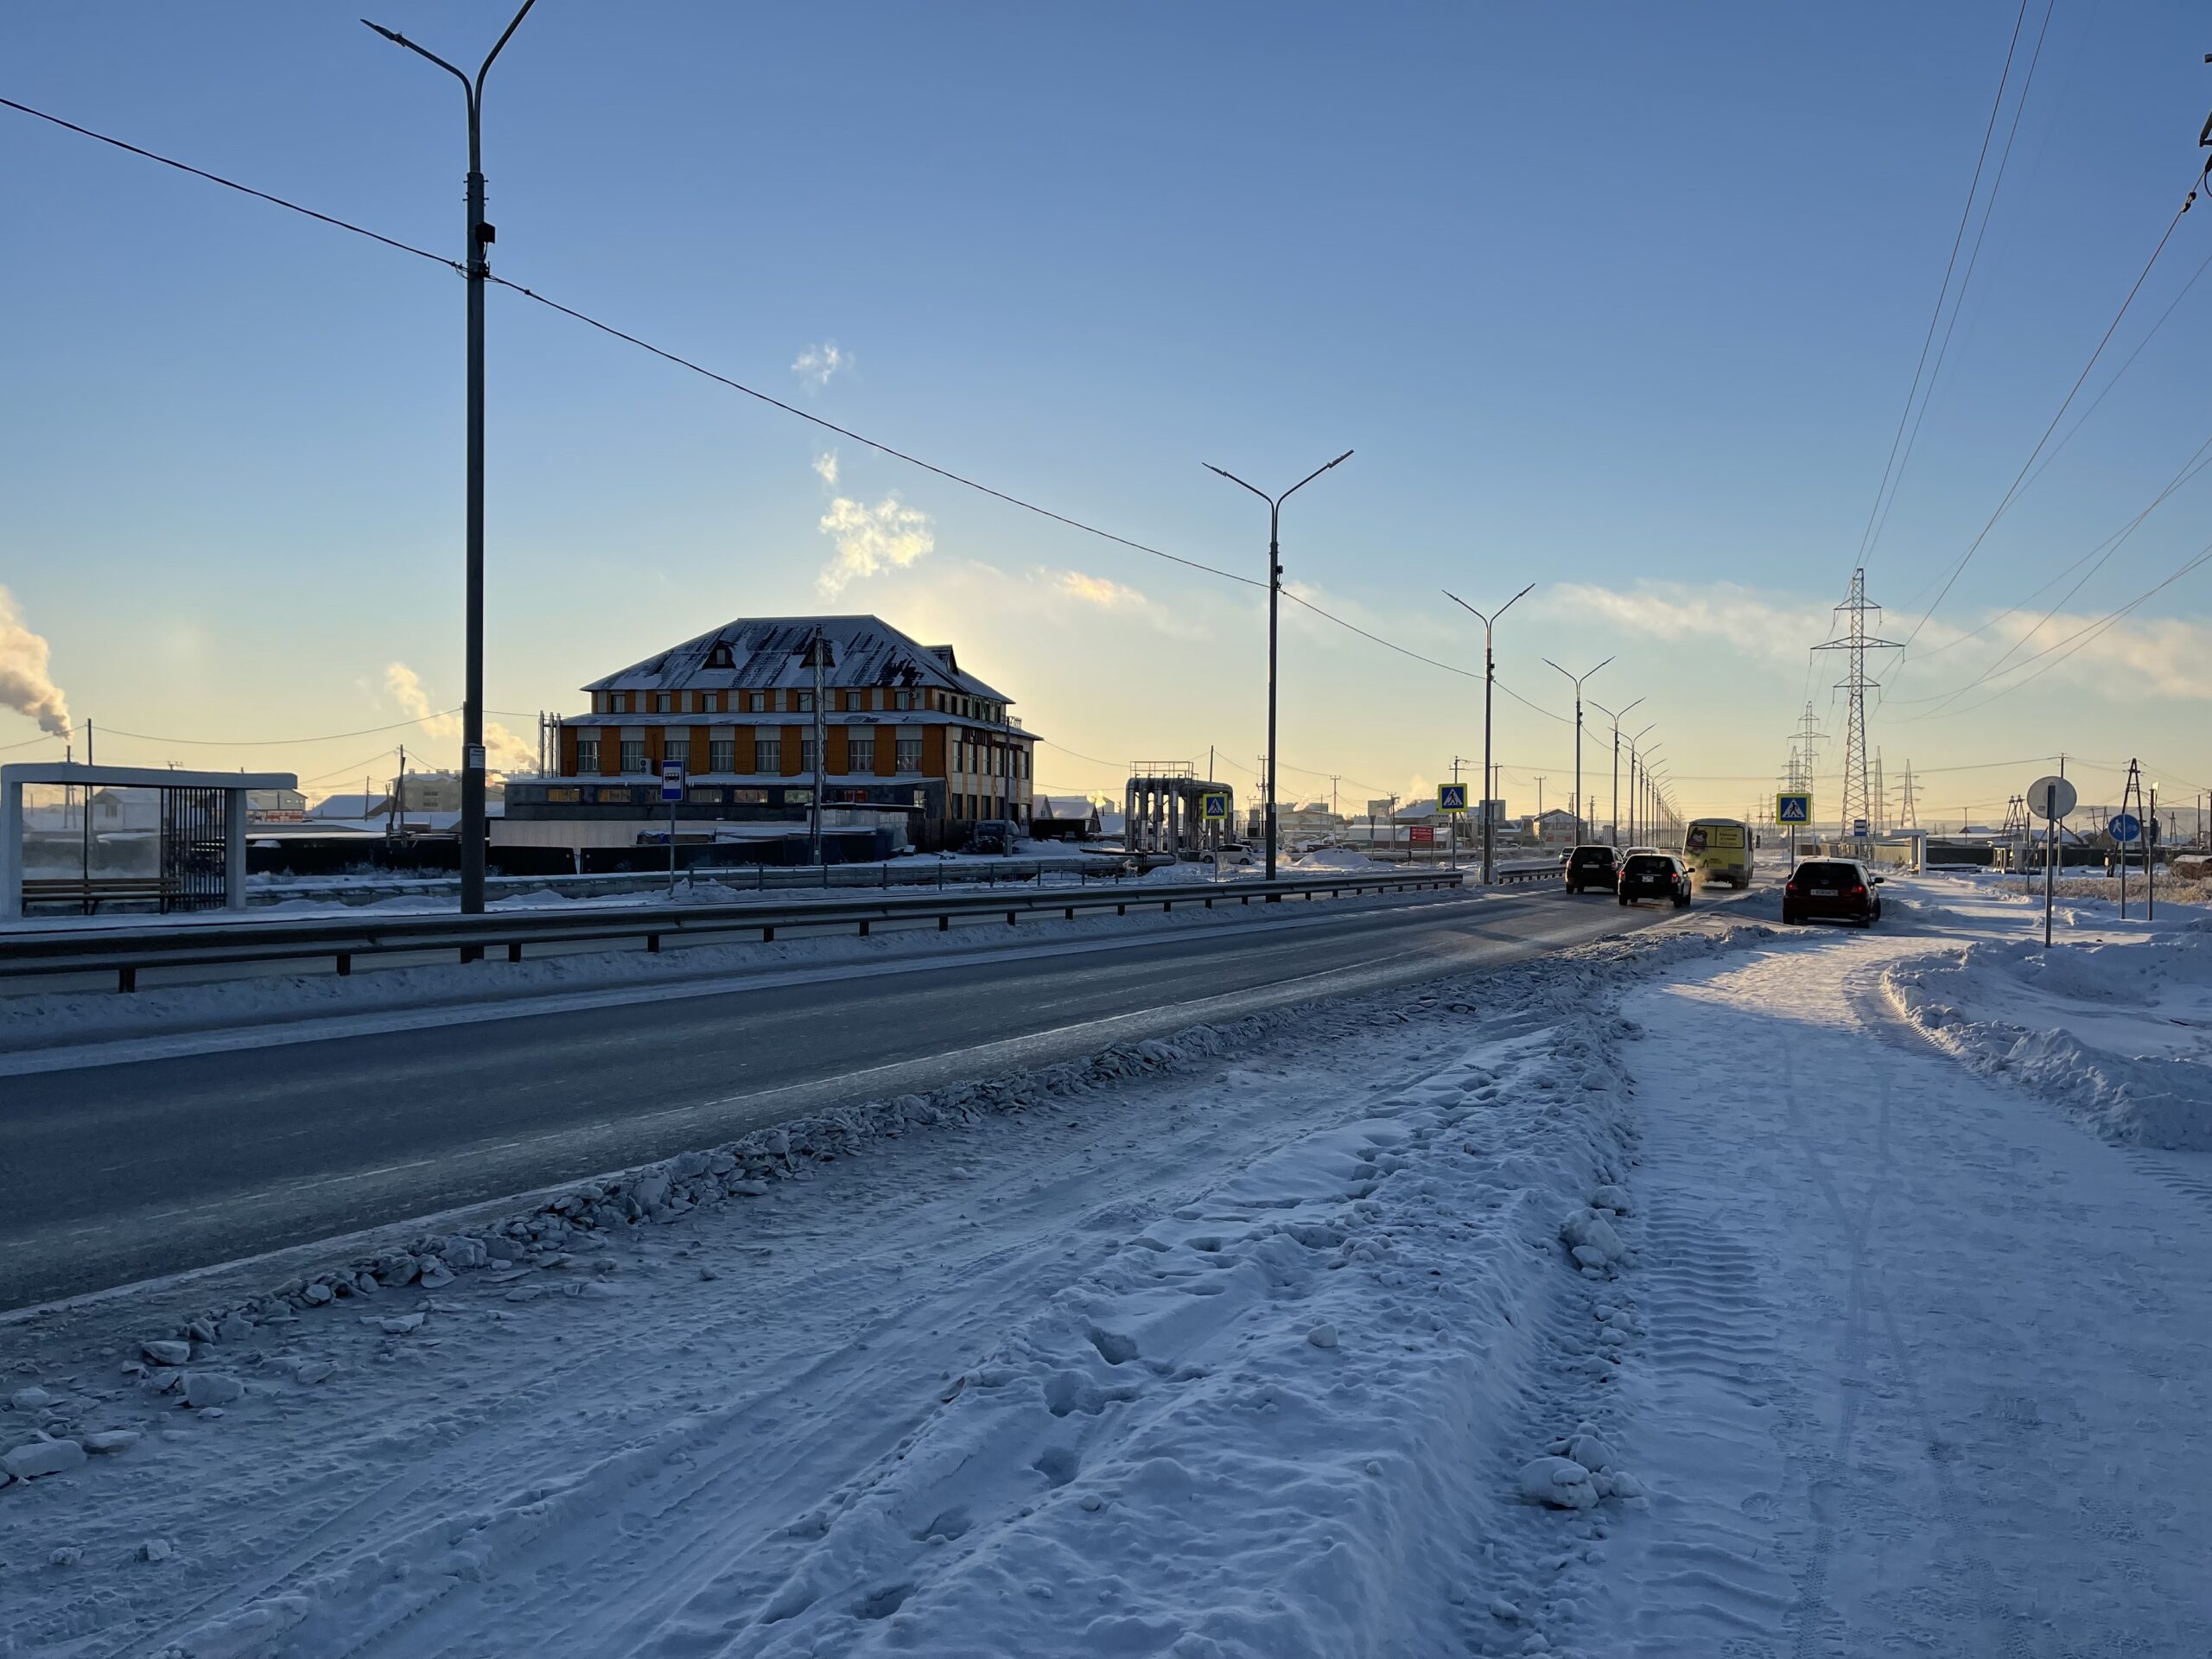 Порядка 480 опор освещения установили в Якутске по нацпроекту